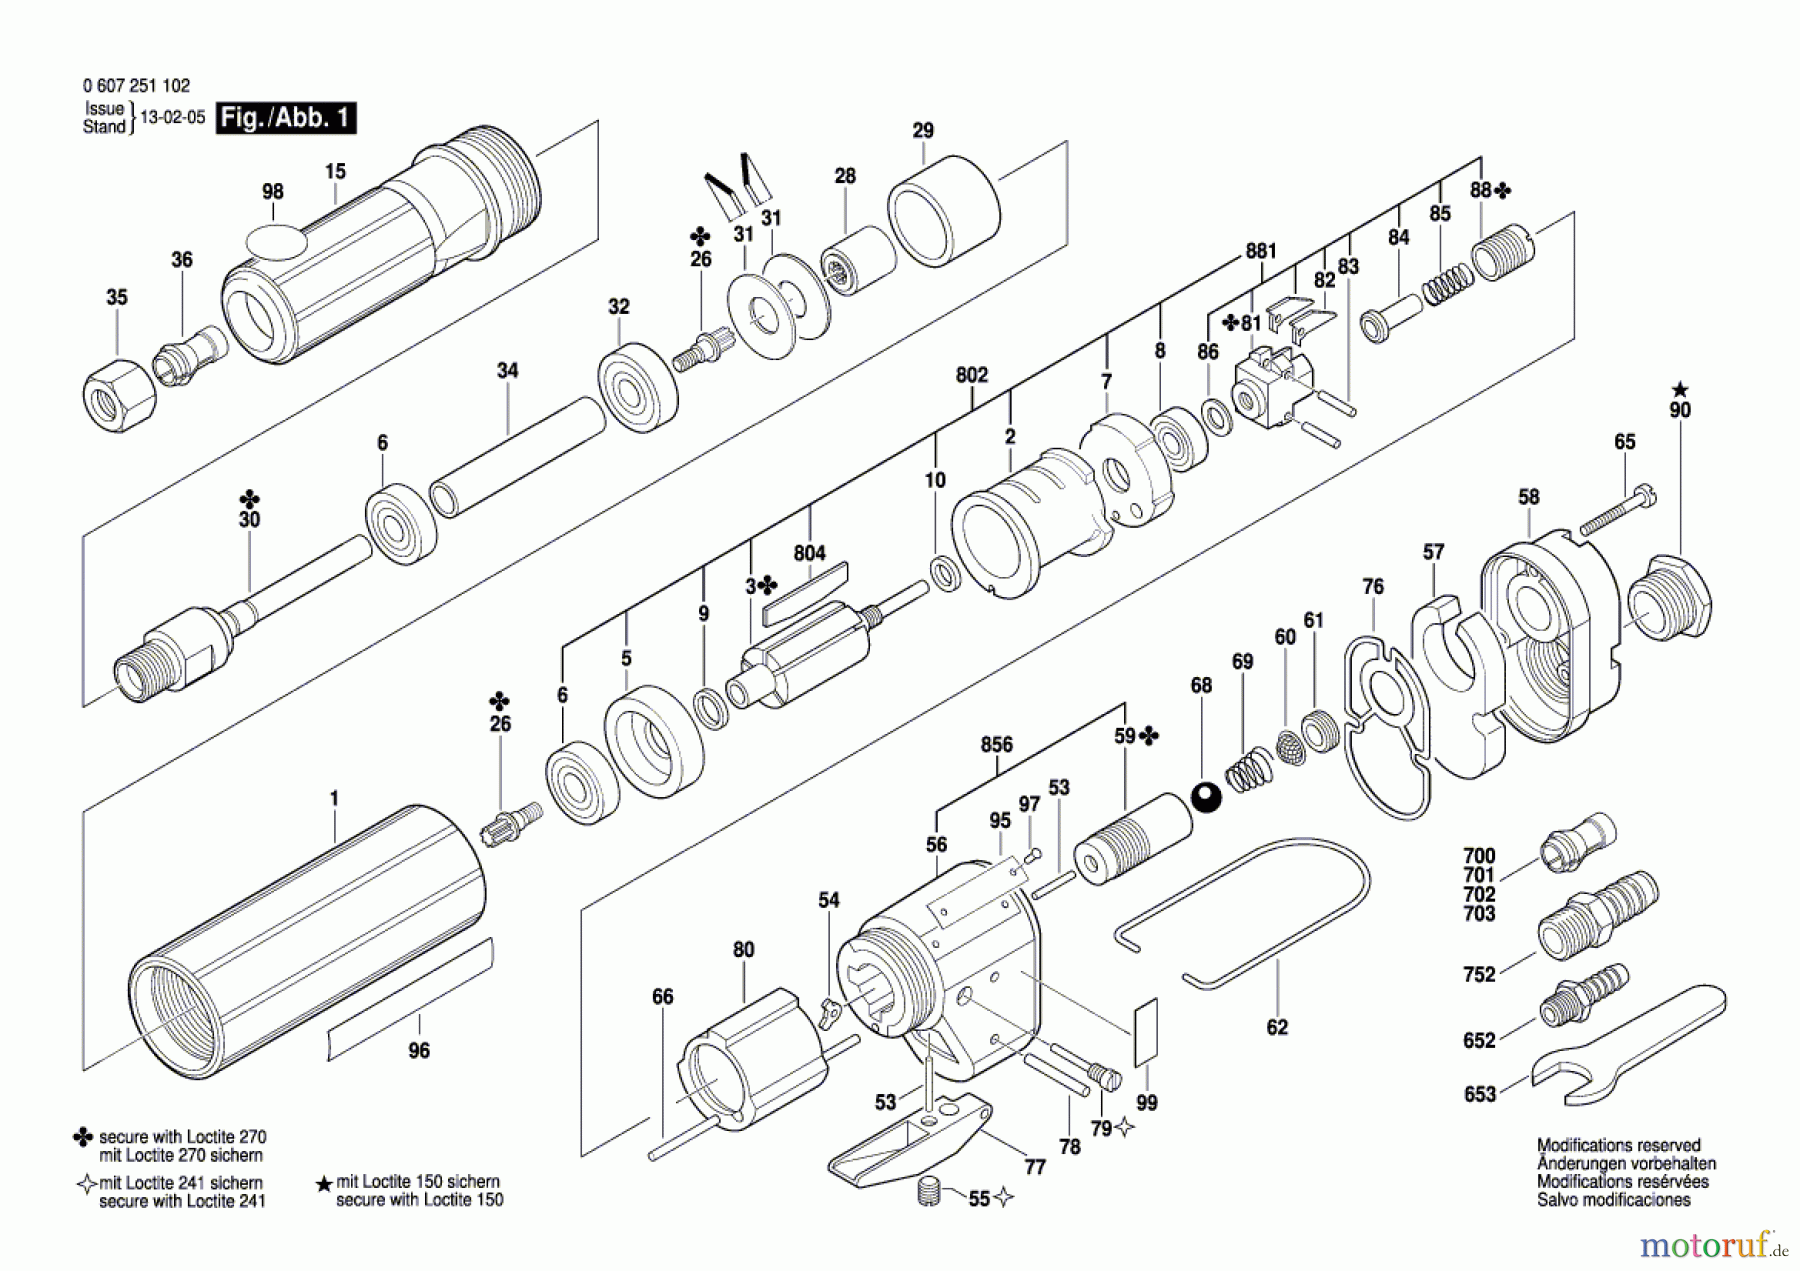  Bosch Werkzeug Pw-Geradschleifer 370 WATT-SERIE Seite 1